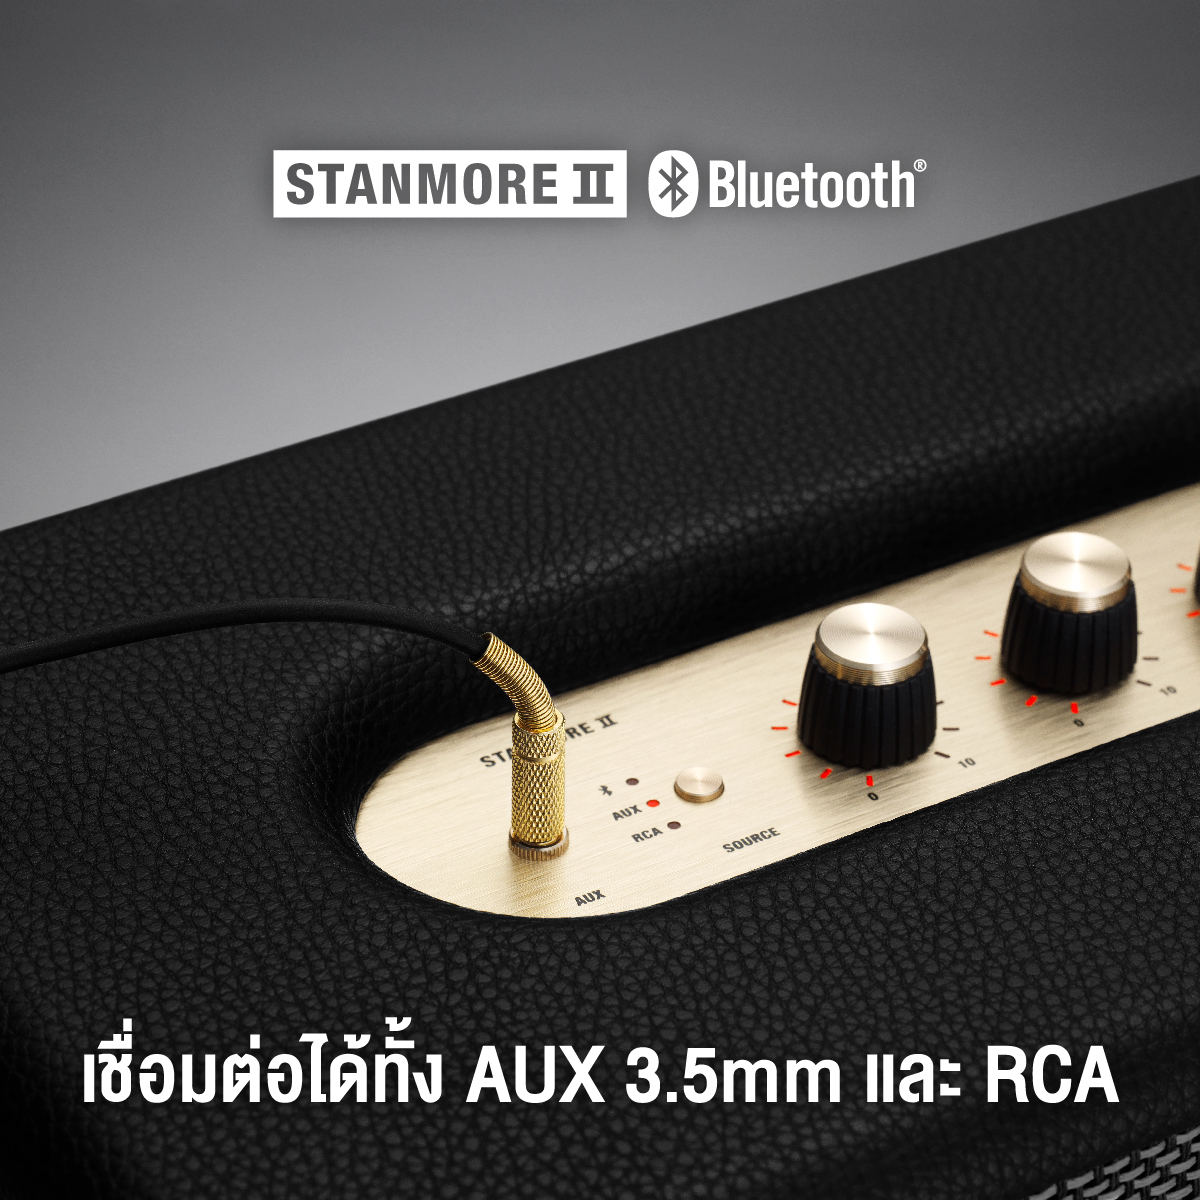 ลำโพงบลูทูธ Marshall Stanmore II Bluetooth สีดำ - รับประกัน 1 ปี + ส่งฟรีทั่วไทย (ลำโพงบลูทูธ, ลำโพงบ้าน,